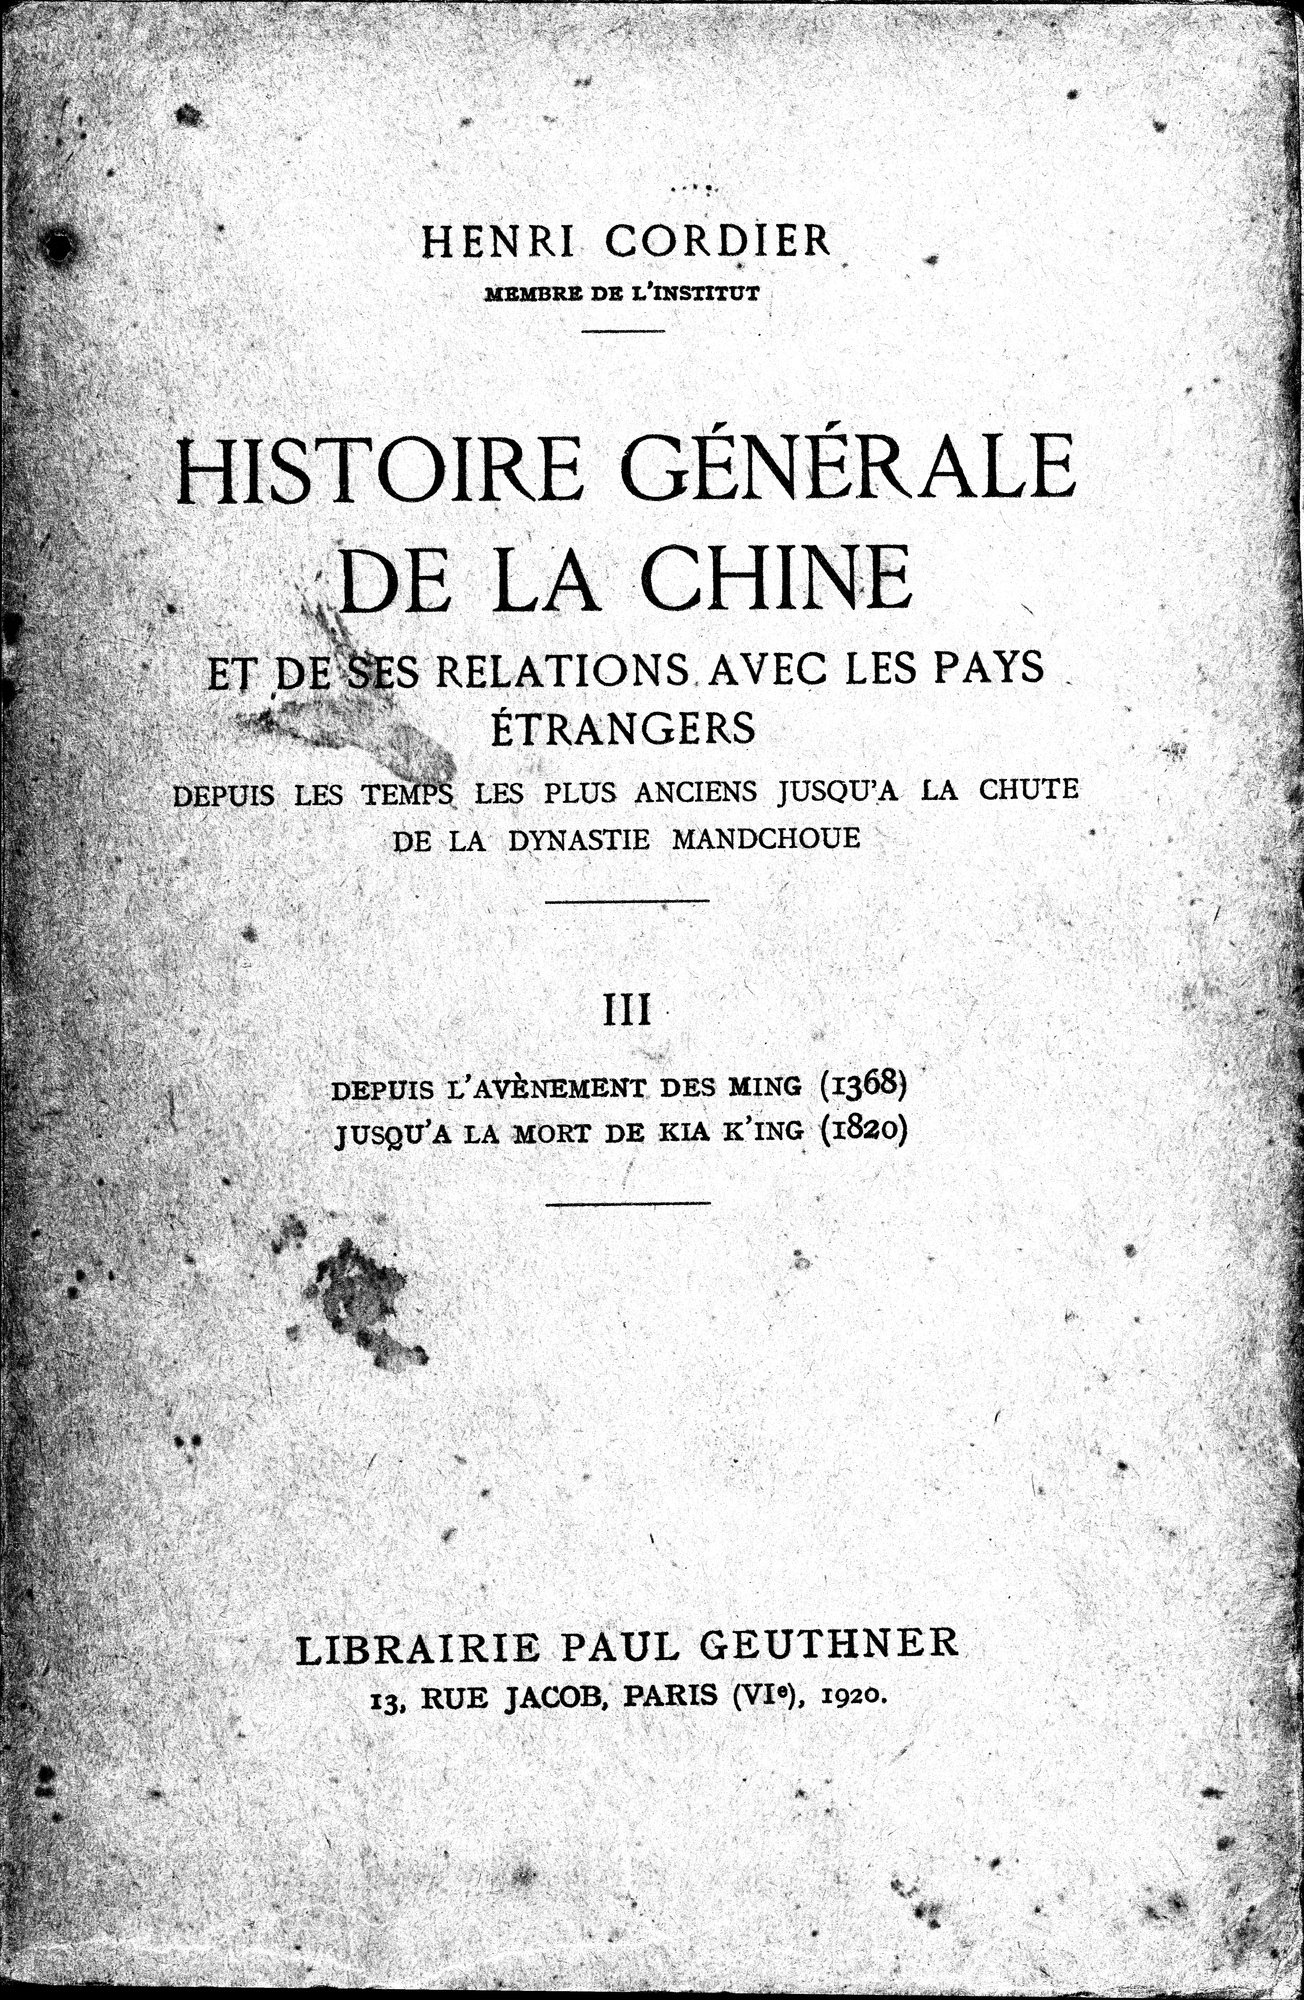 Histoire Générale de la Chine : vol.3 / Page 1 (Grayscale High Resolution Image)